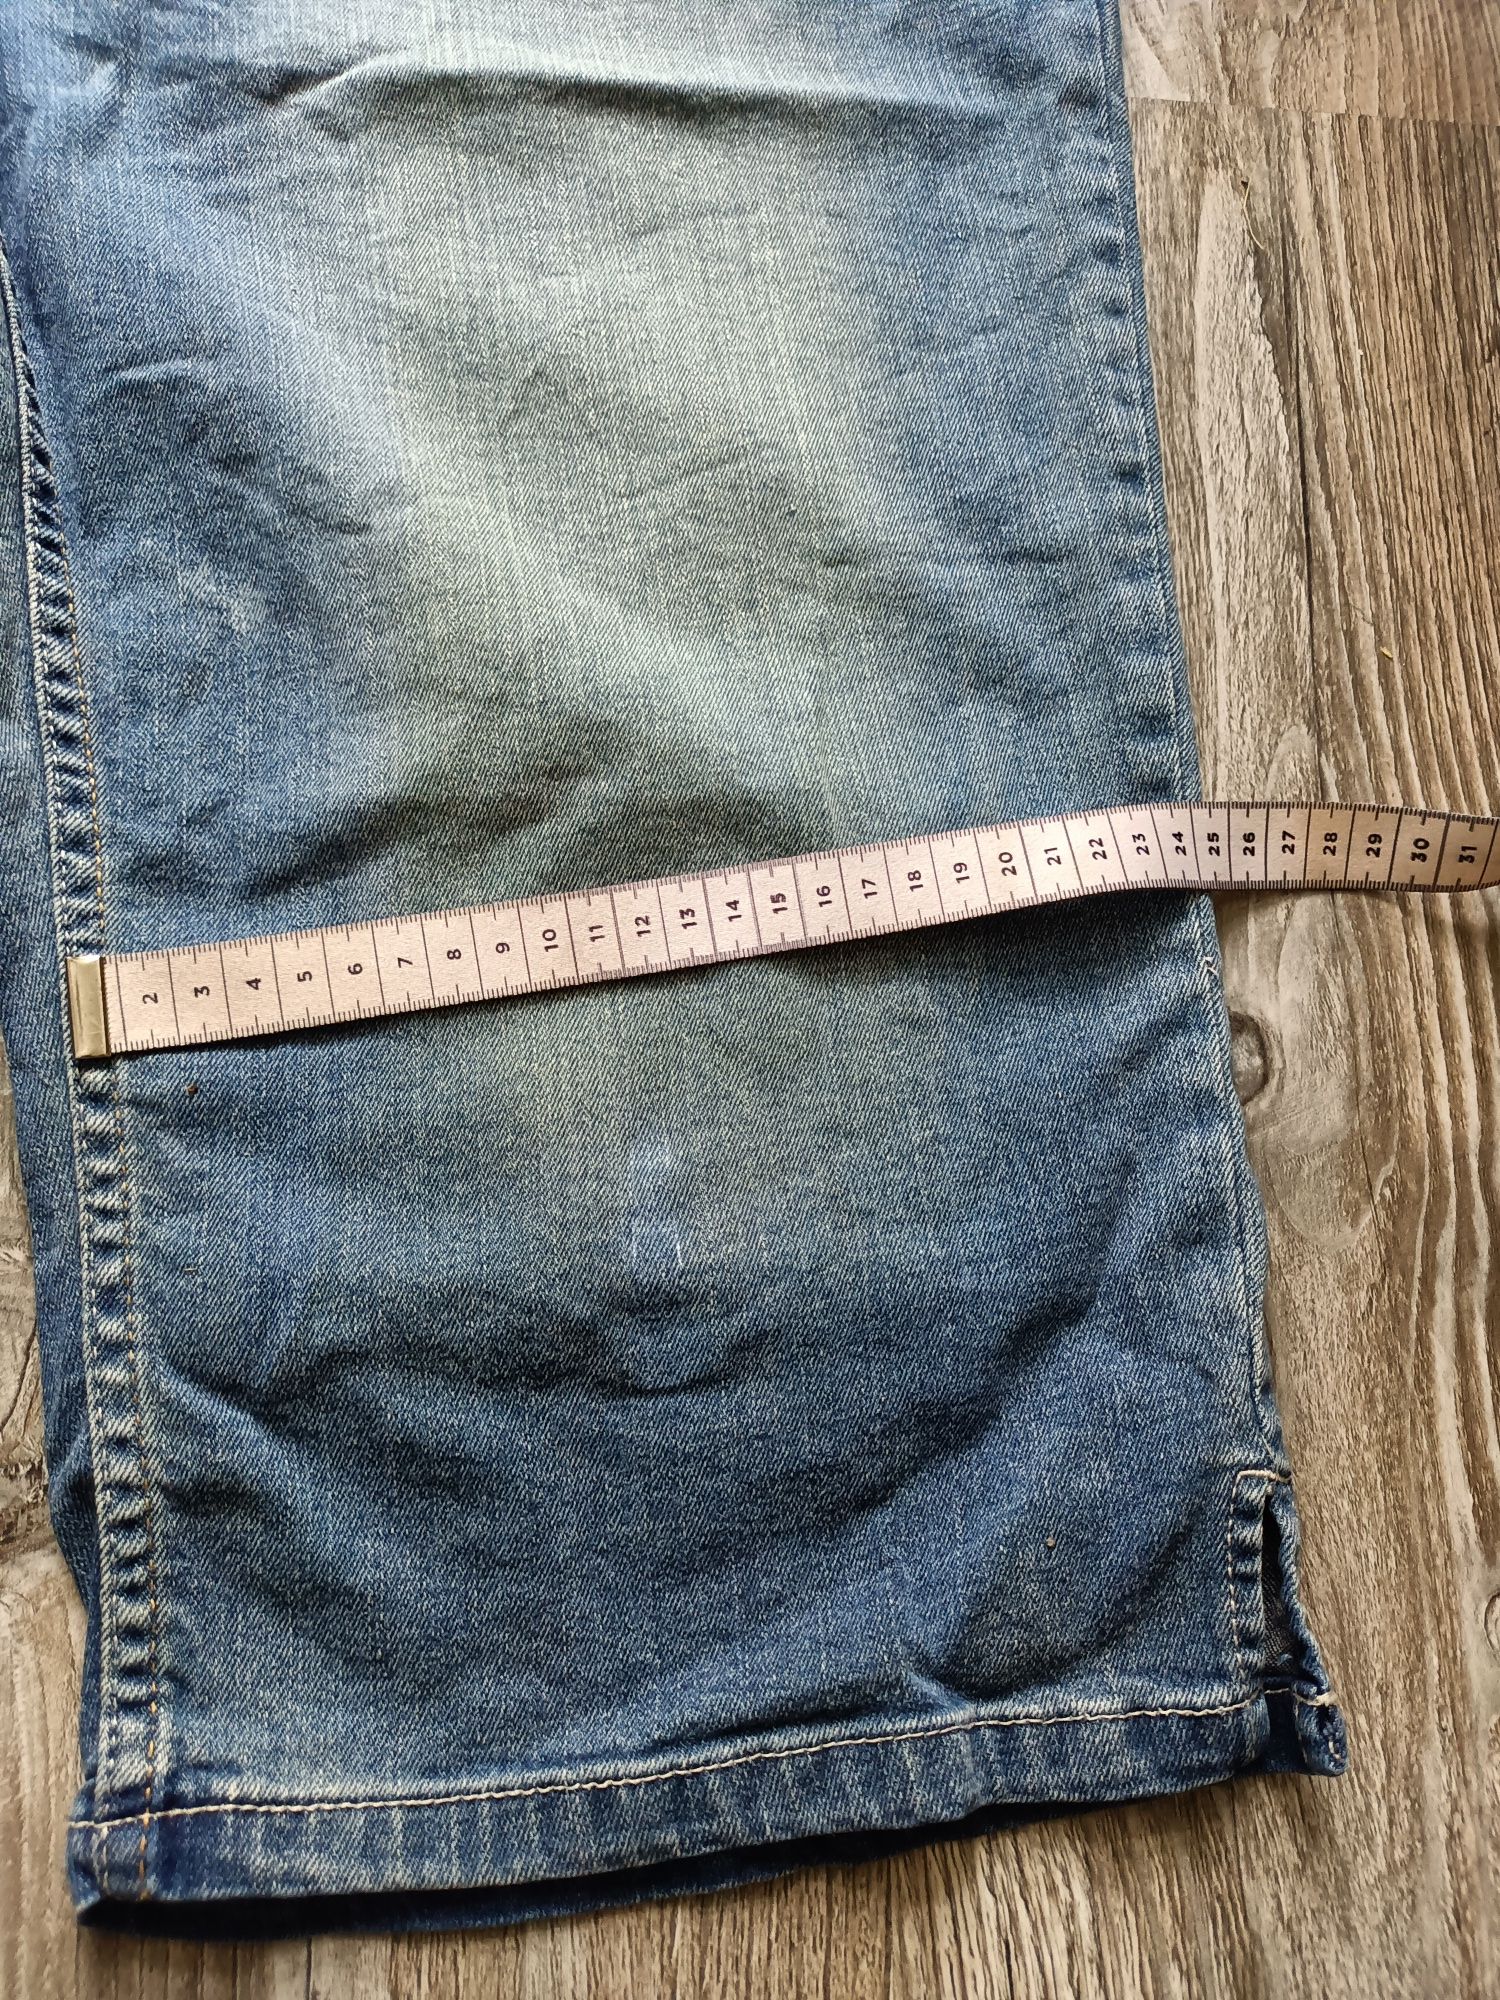 Spodnie damskie rozmiar 50 dżinsowe jeansowe